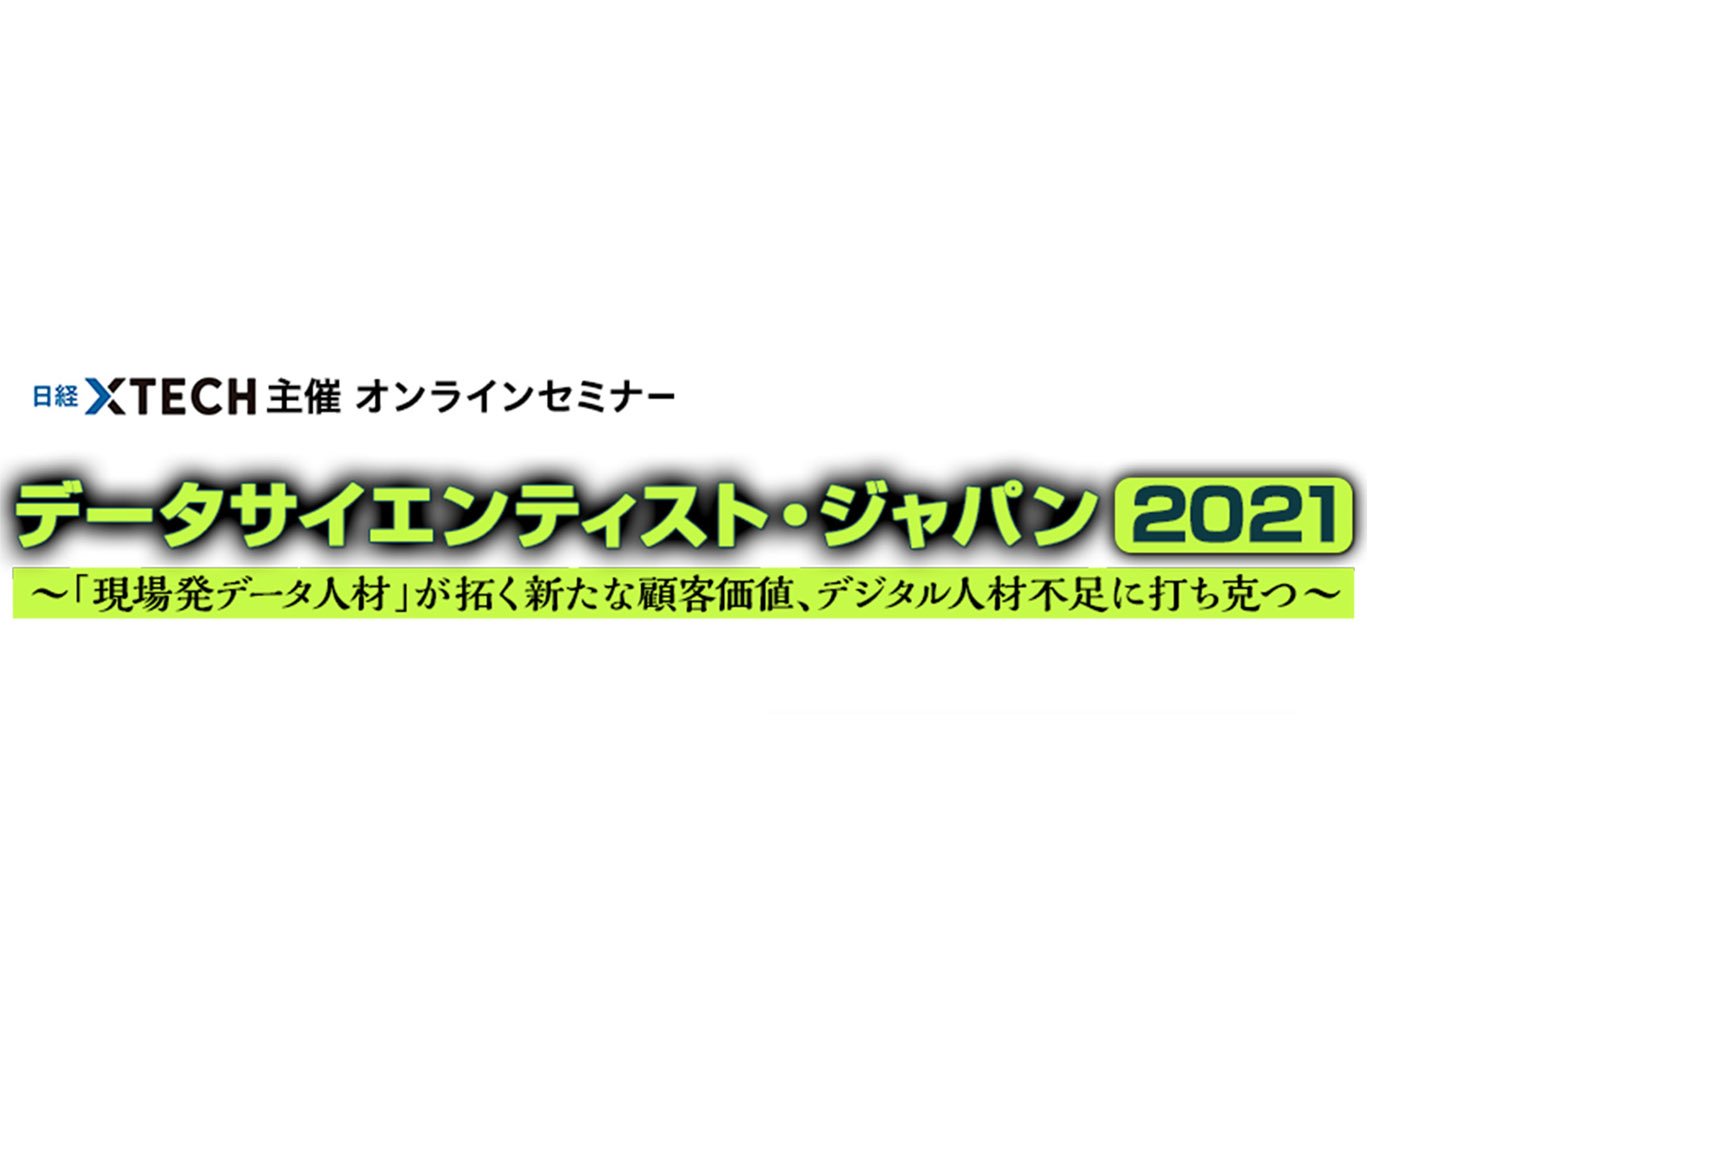 INCUDATA Magazine_000242_日経データサイエンティストジャパン 2021 イベントレポート